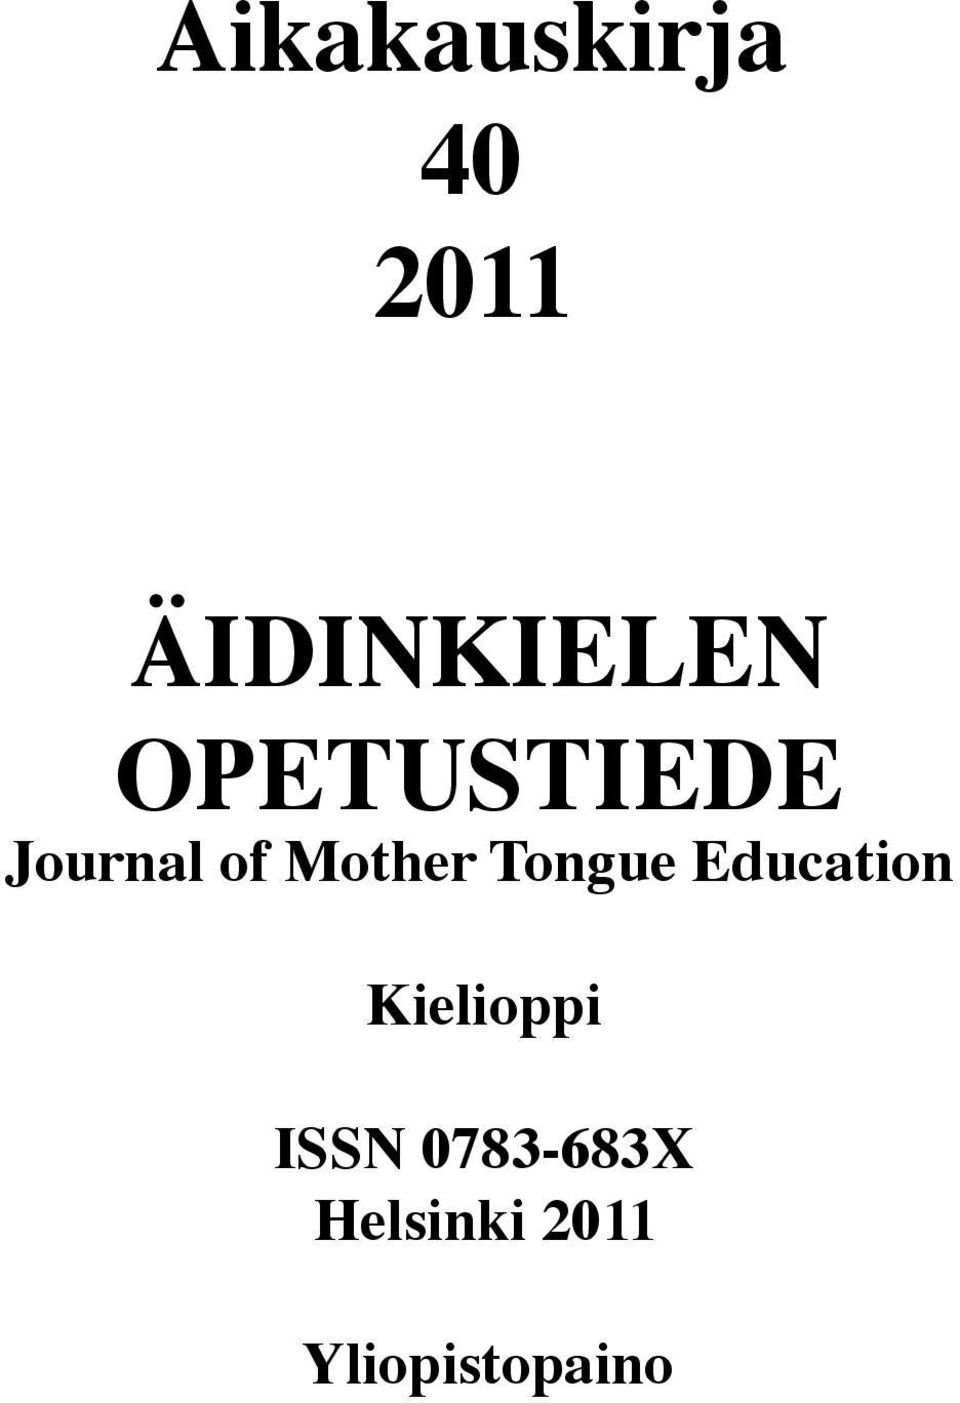 Tongue Education Kielioppi ISSN